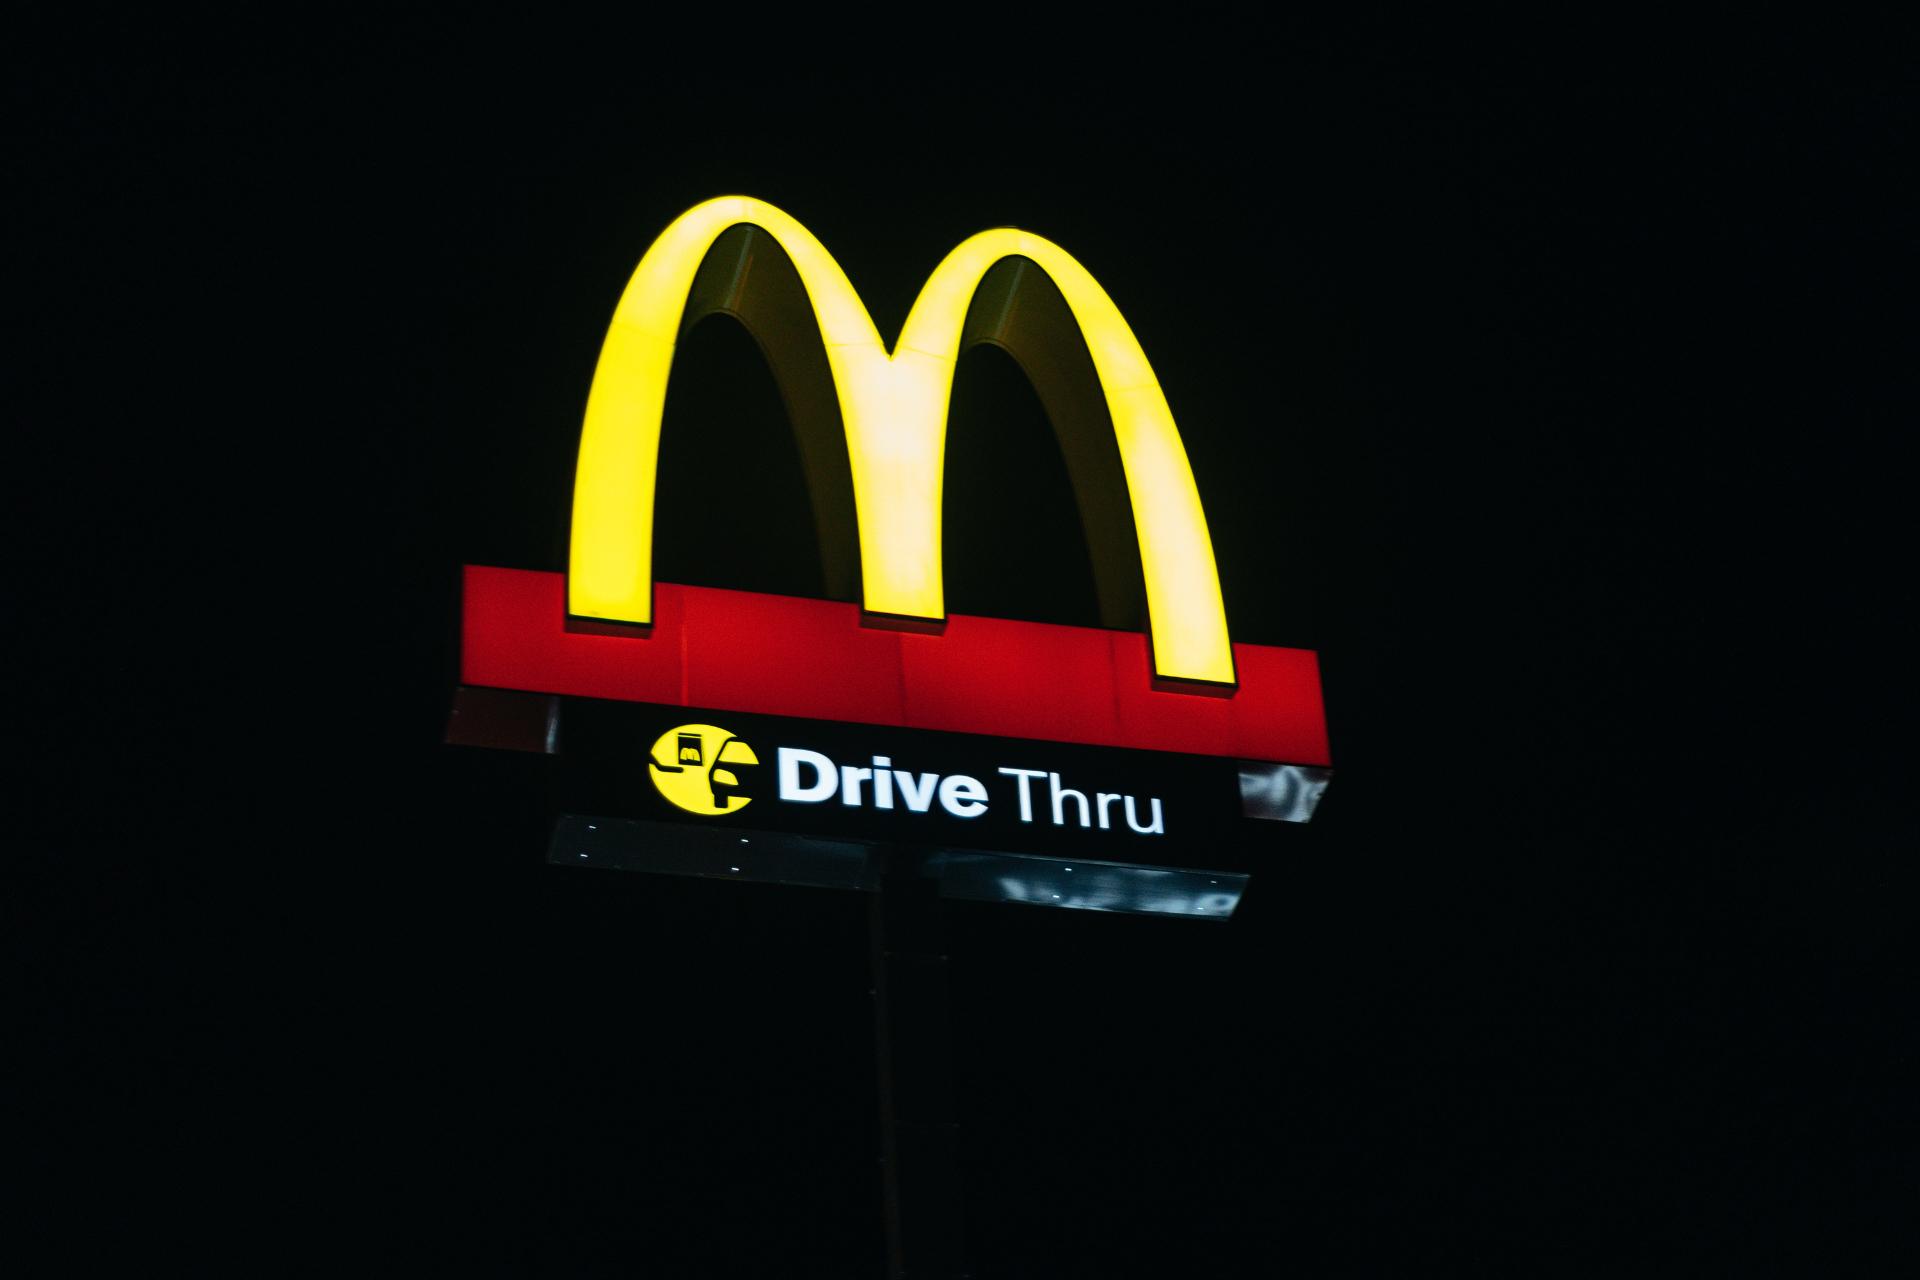 Servicio en automóviles o automac de McDonald's